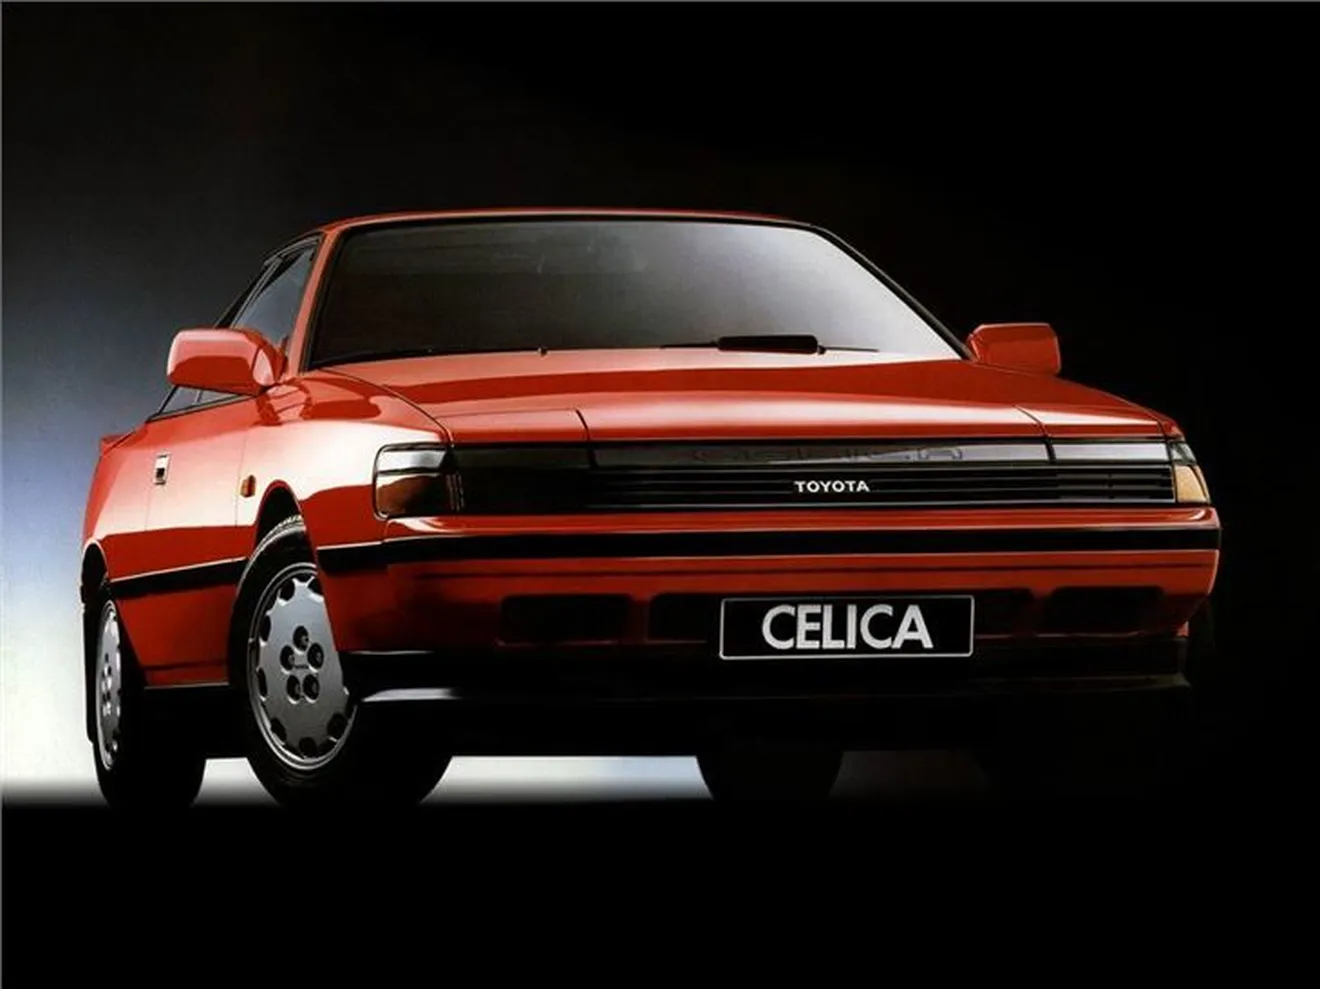 Toyota registra la denominación Celica, pero ¿para qué?